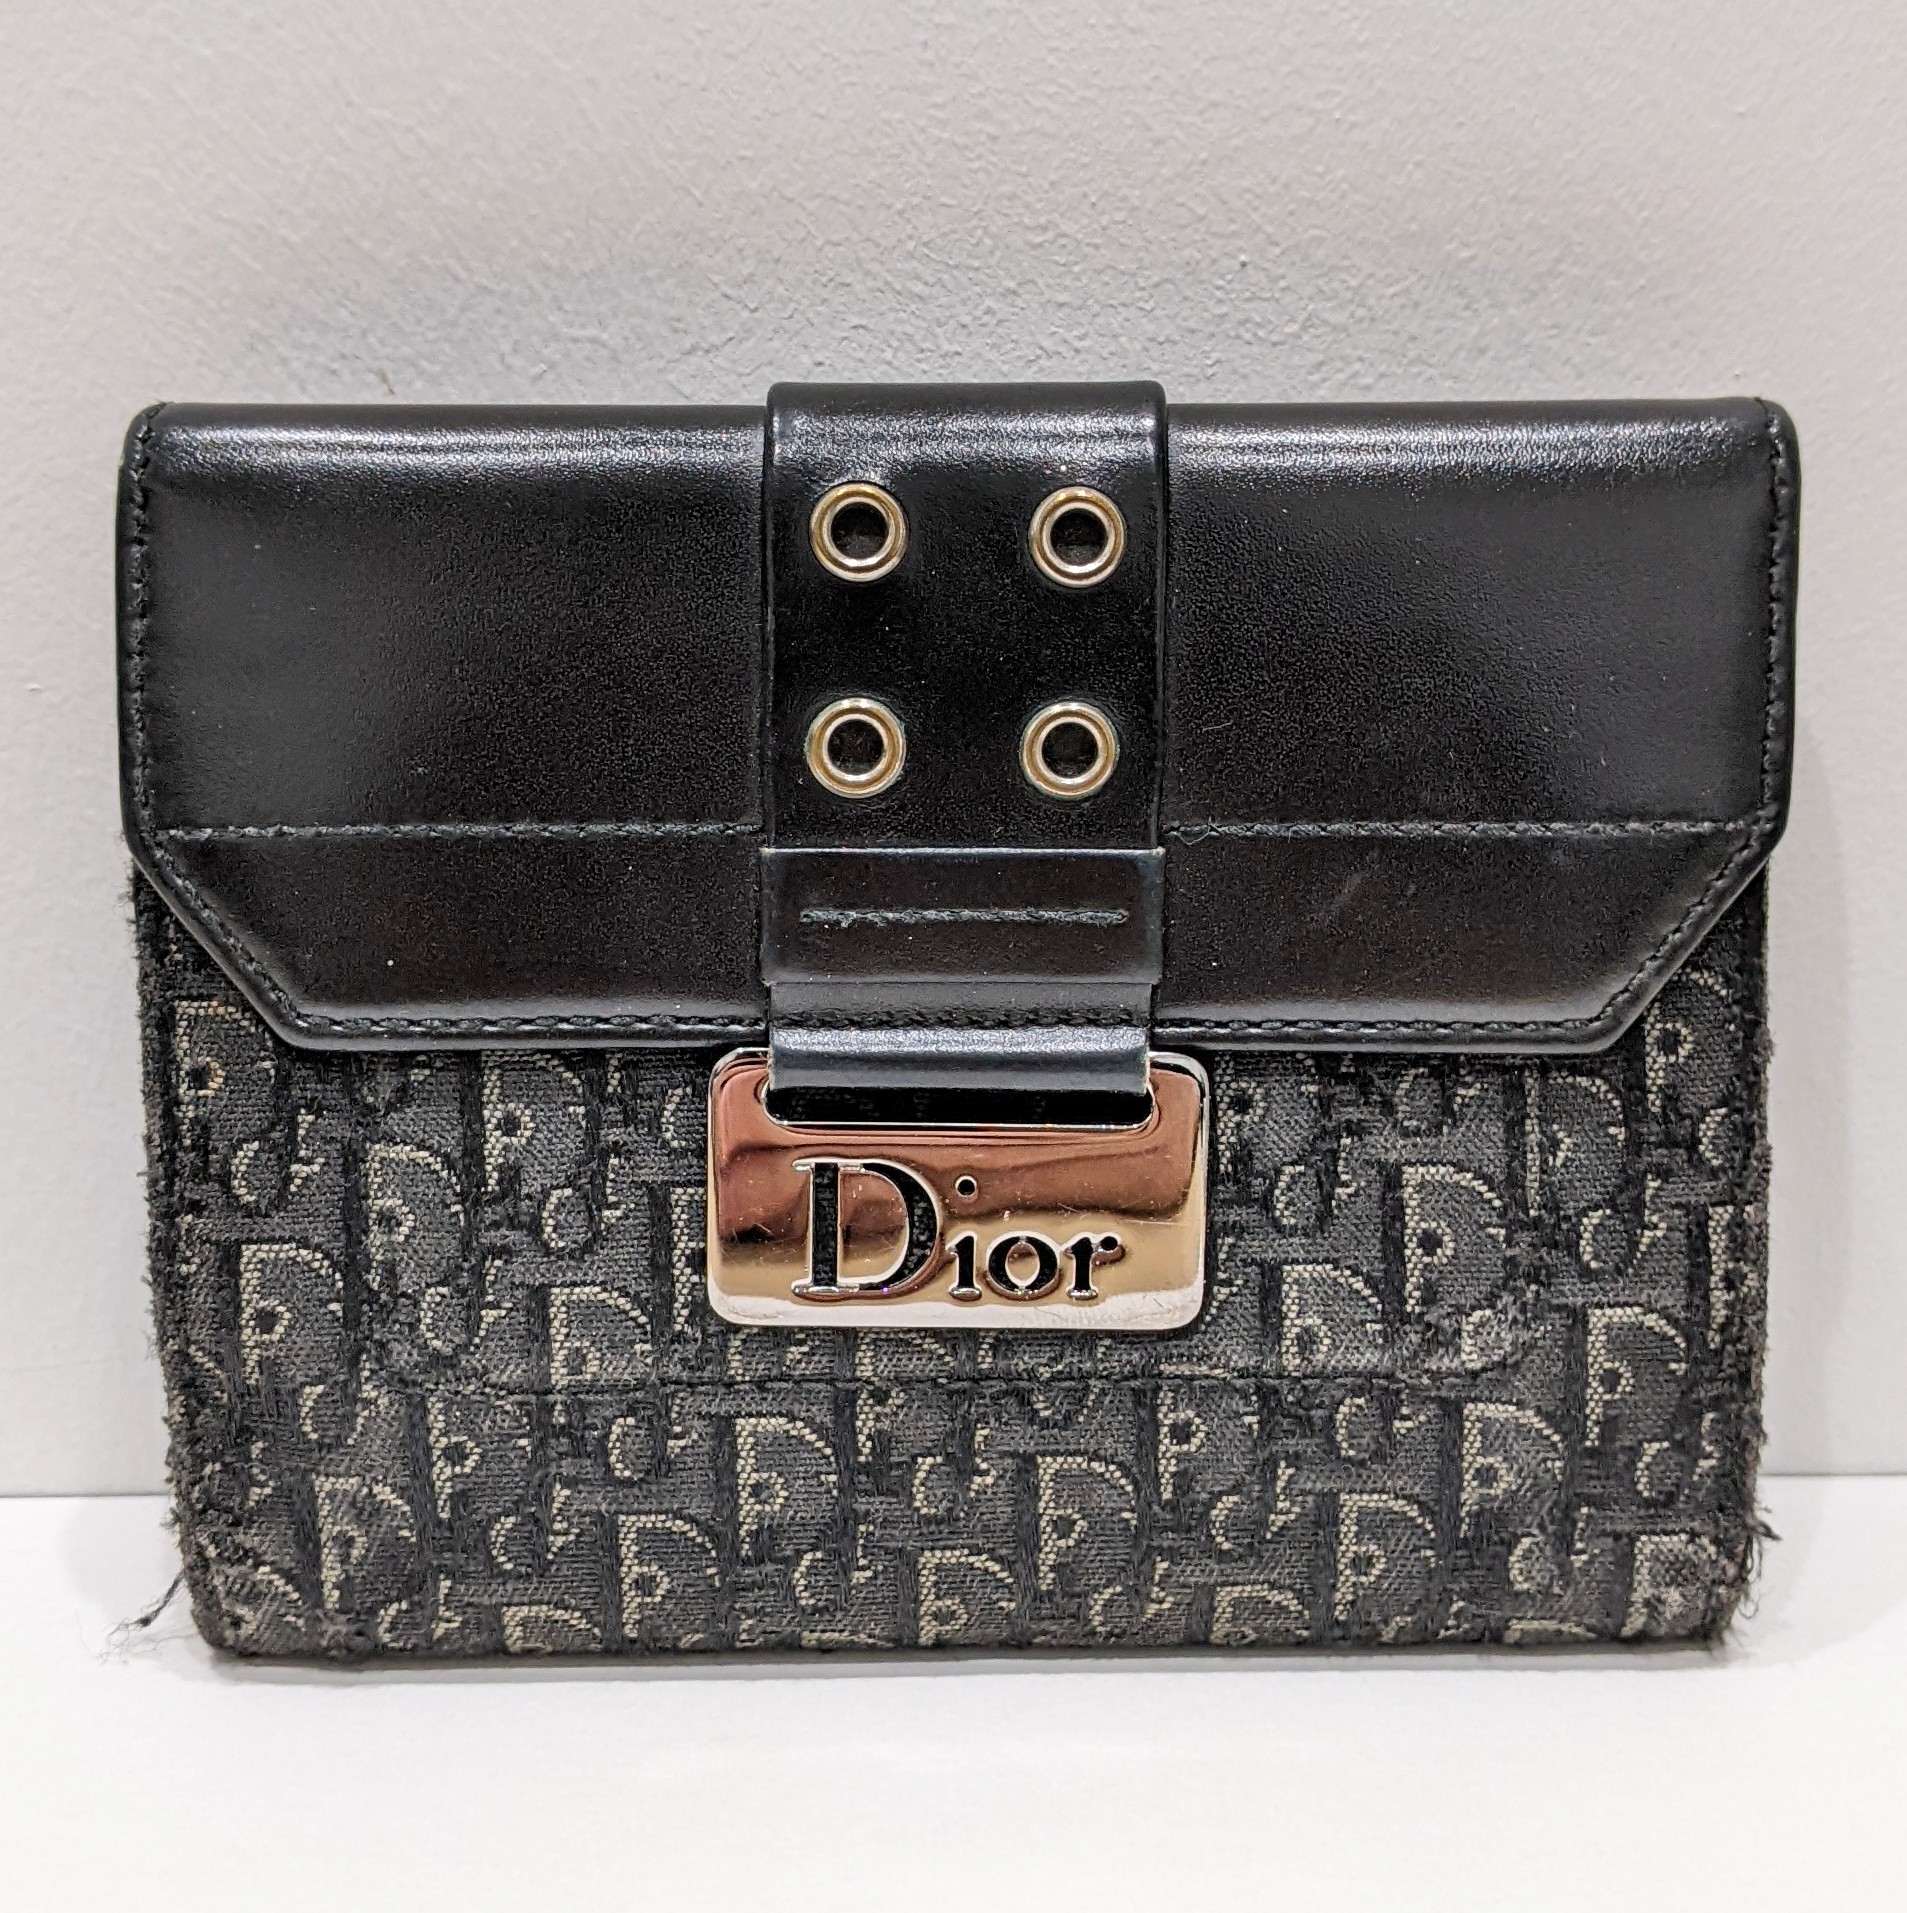 Dior,ディオール,財布,サイフ,ブランド